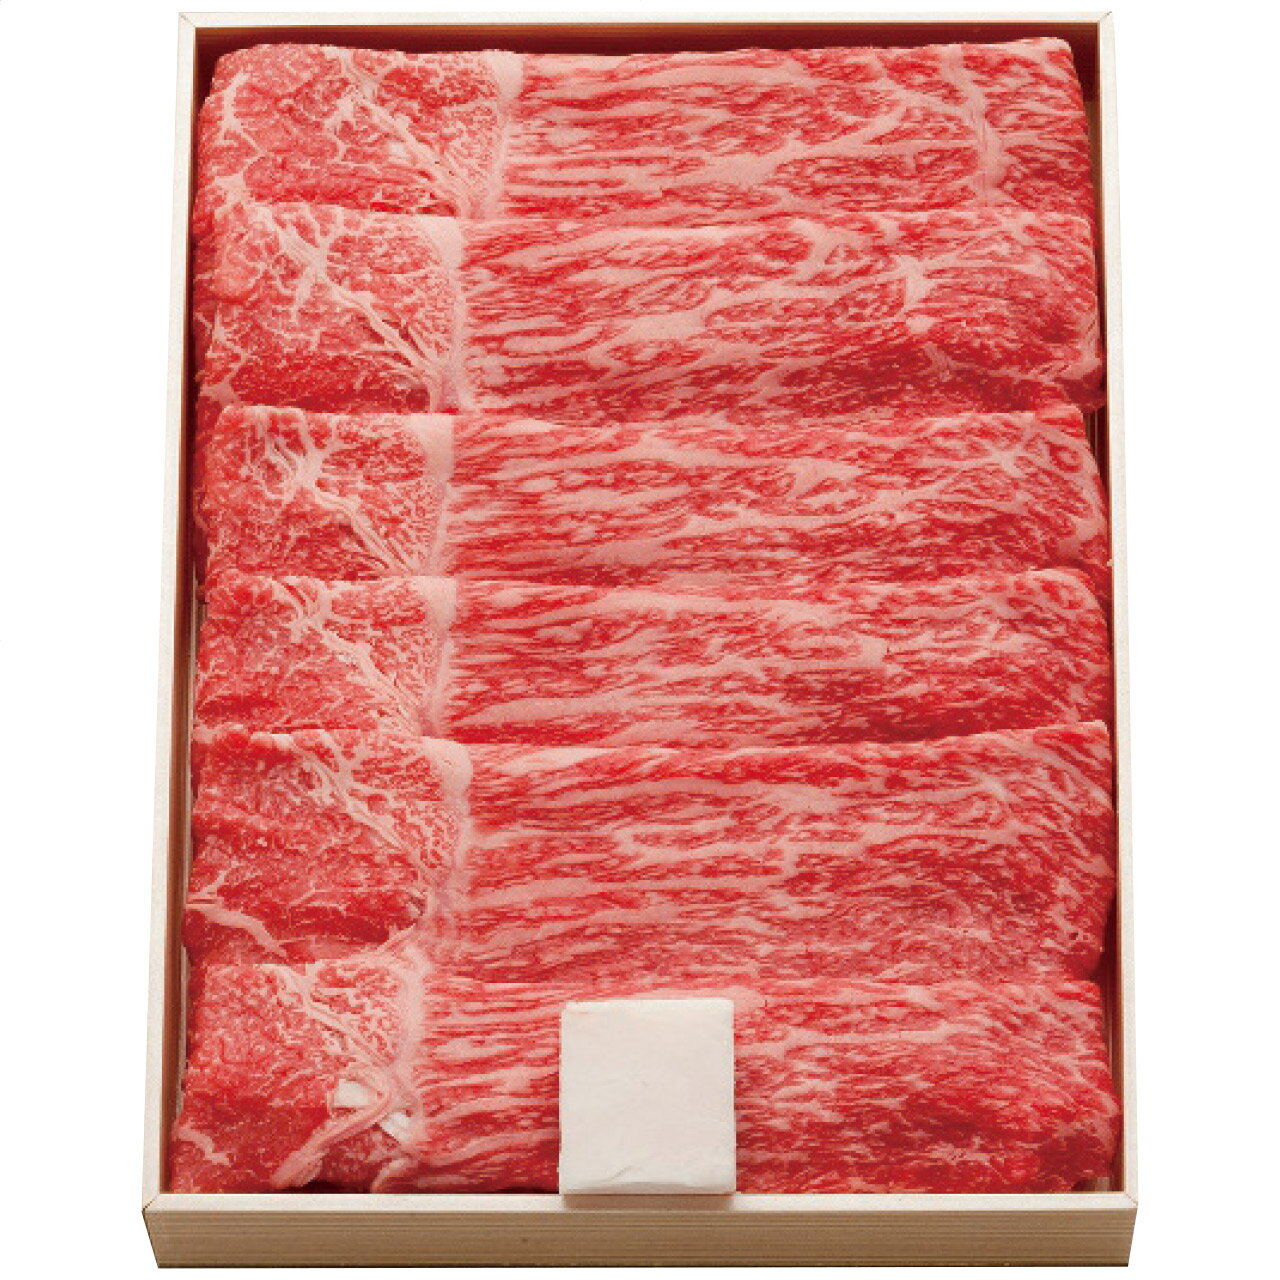 モモすき焼き用(約300g) サンショク 日本製 [APD2267-032 産直]| 肉食品 精肉・肉加工品 肉類